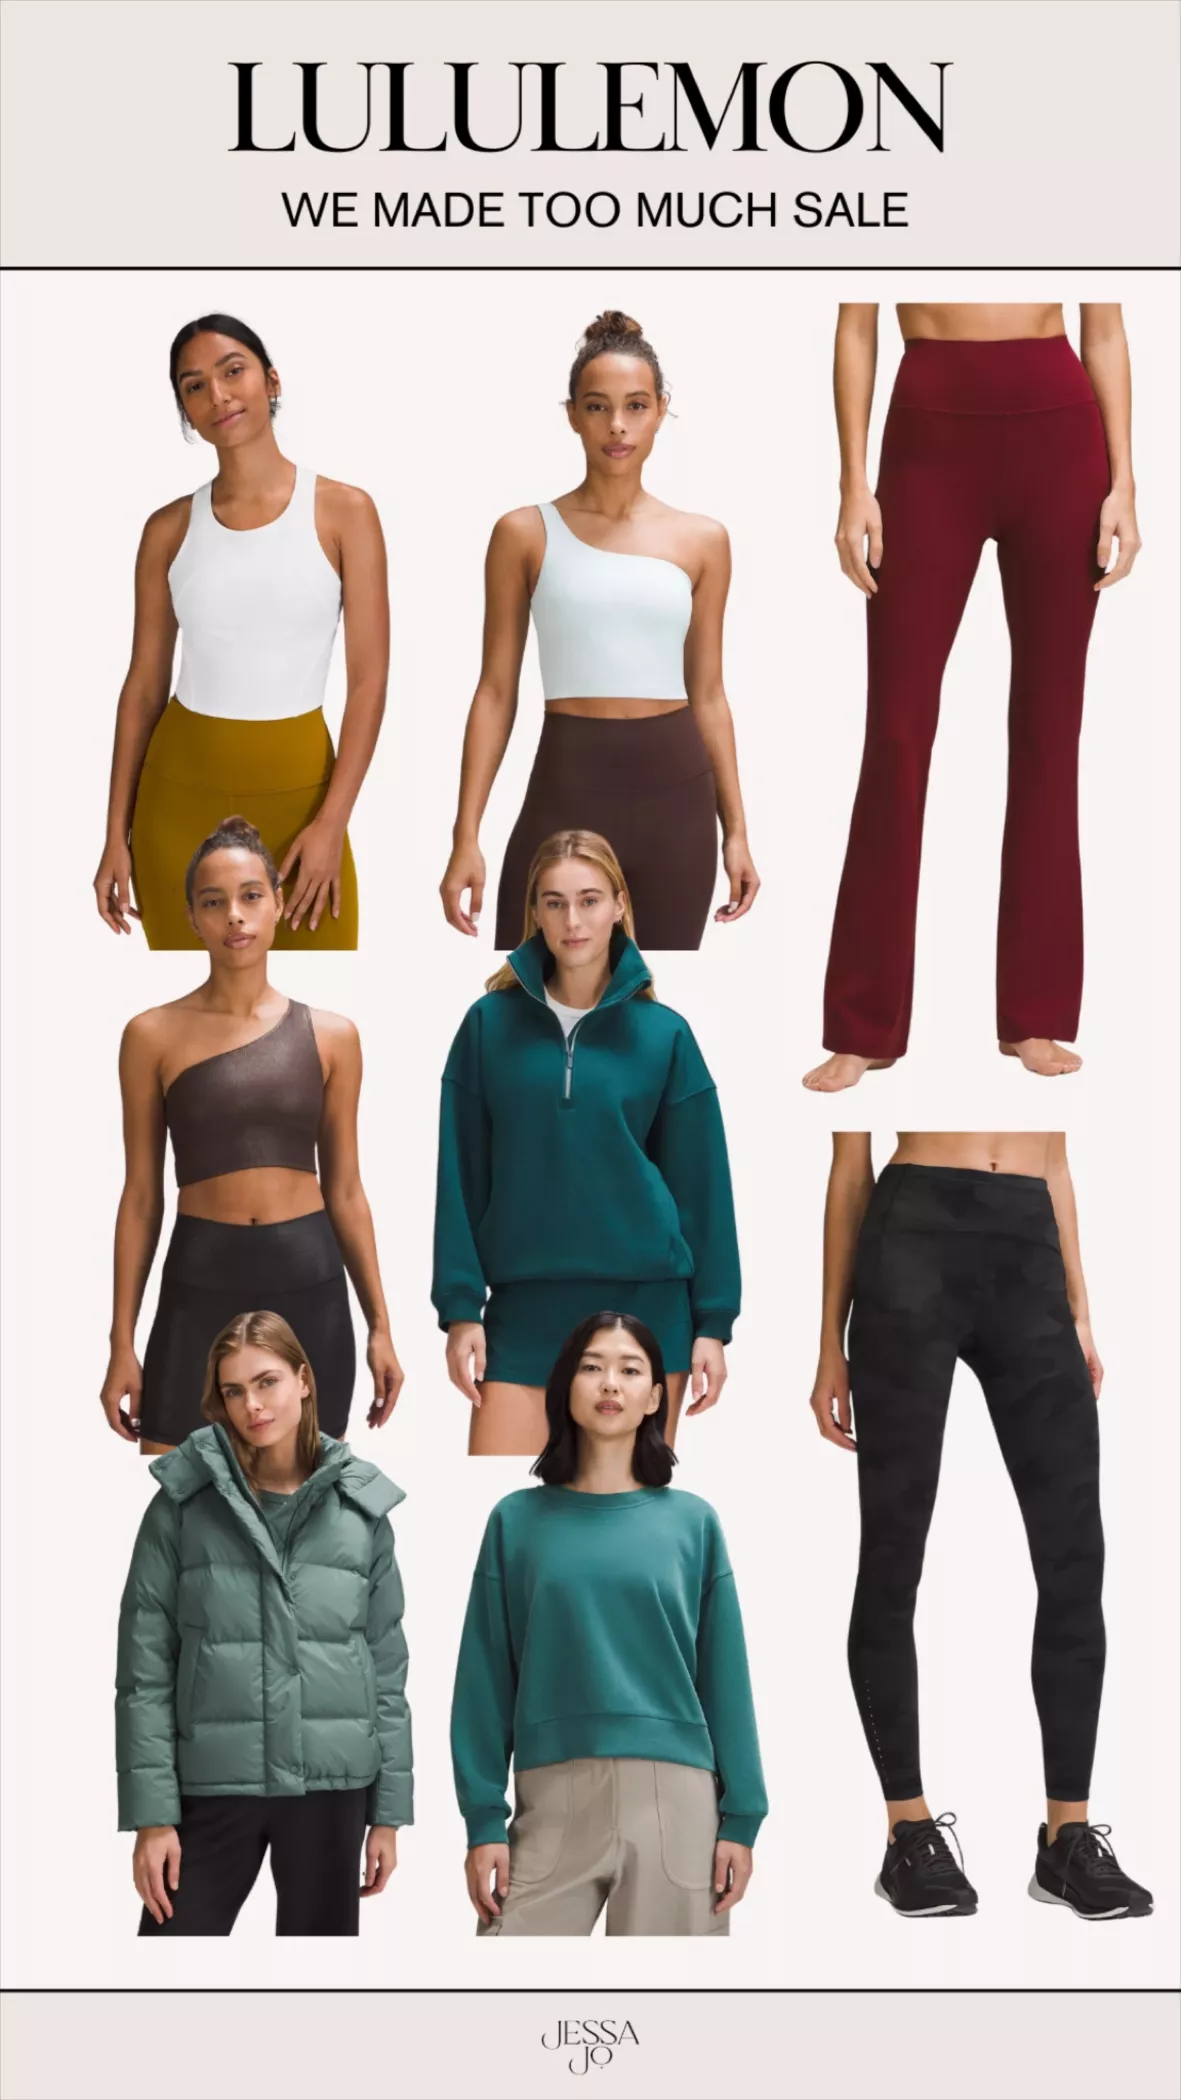 We Made Too Much Sale: Top deals on Lululemon leggings this week